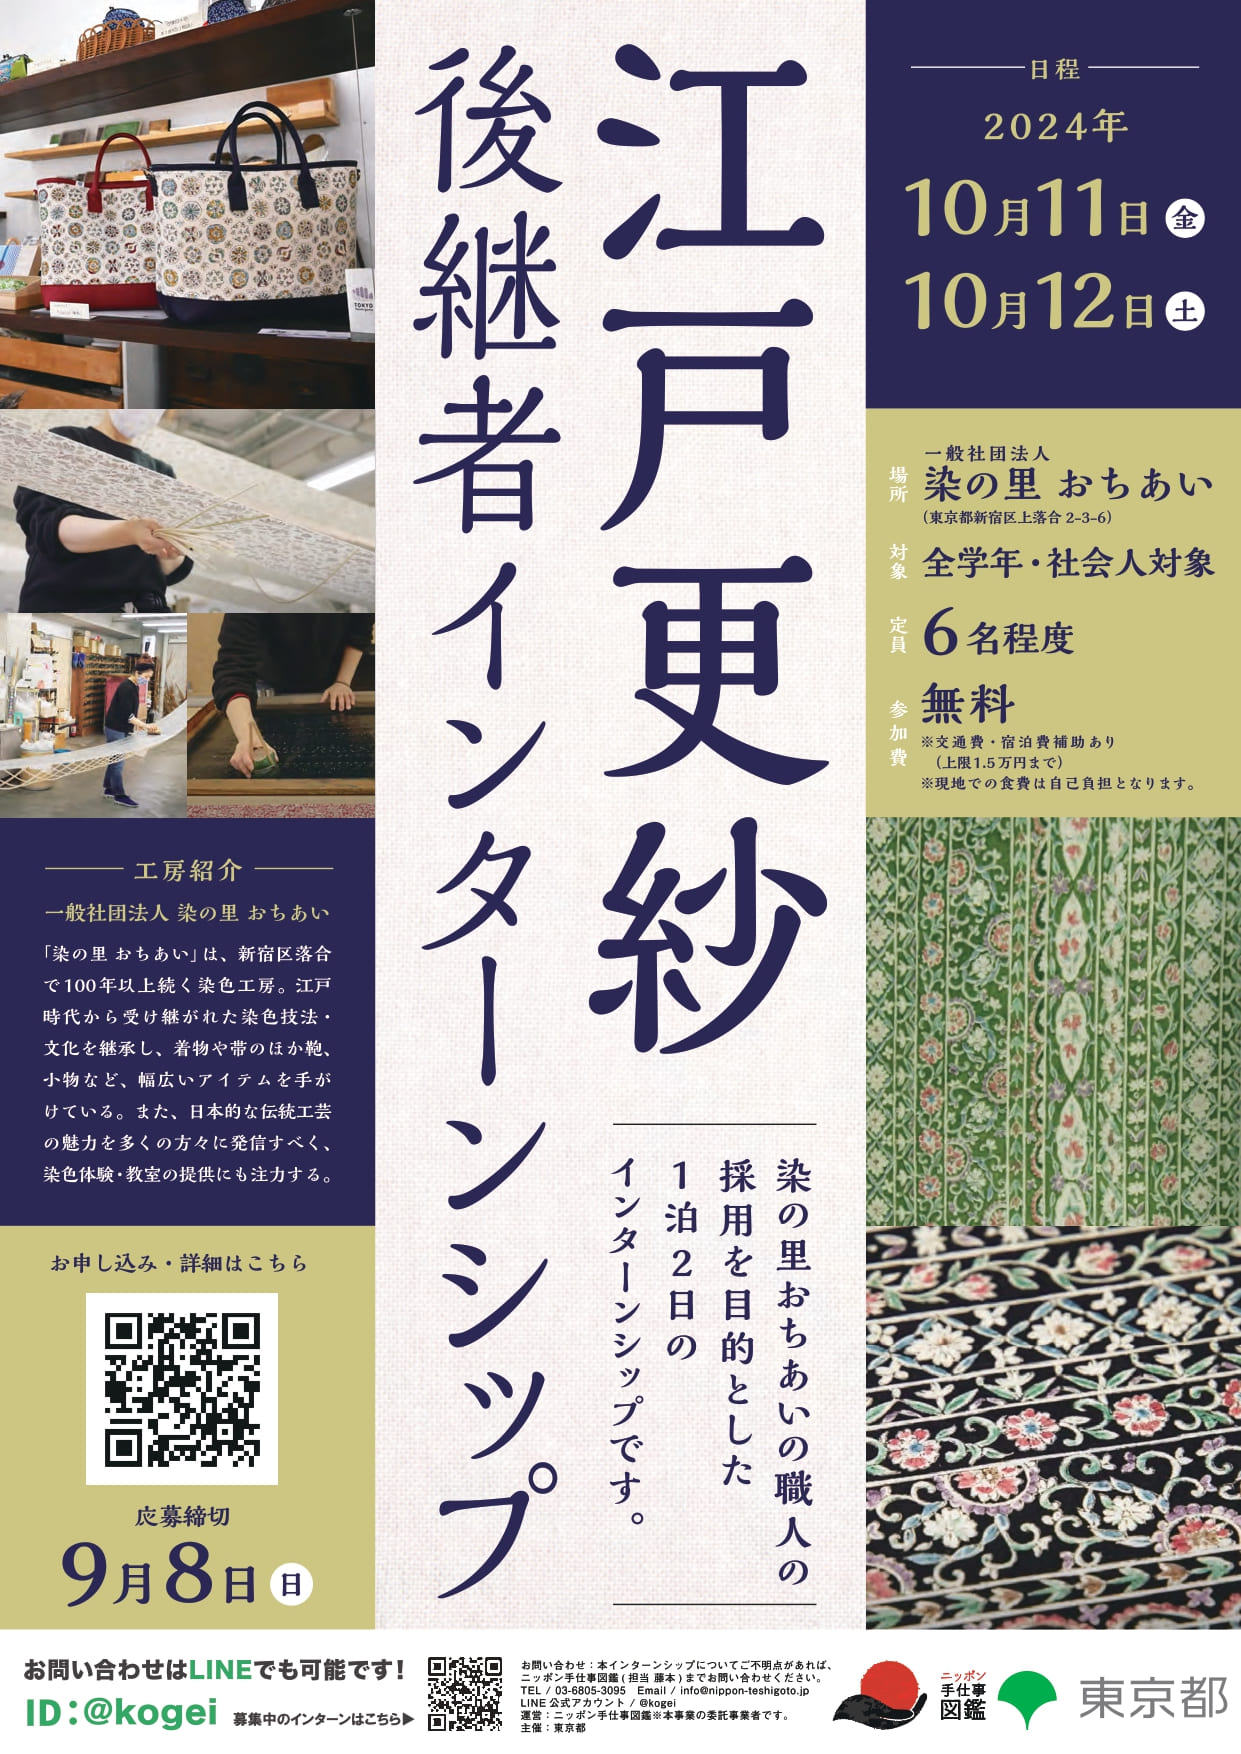 東京都伝統的工芸品江戸更紗後継者インターンシップポスター